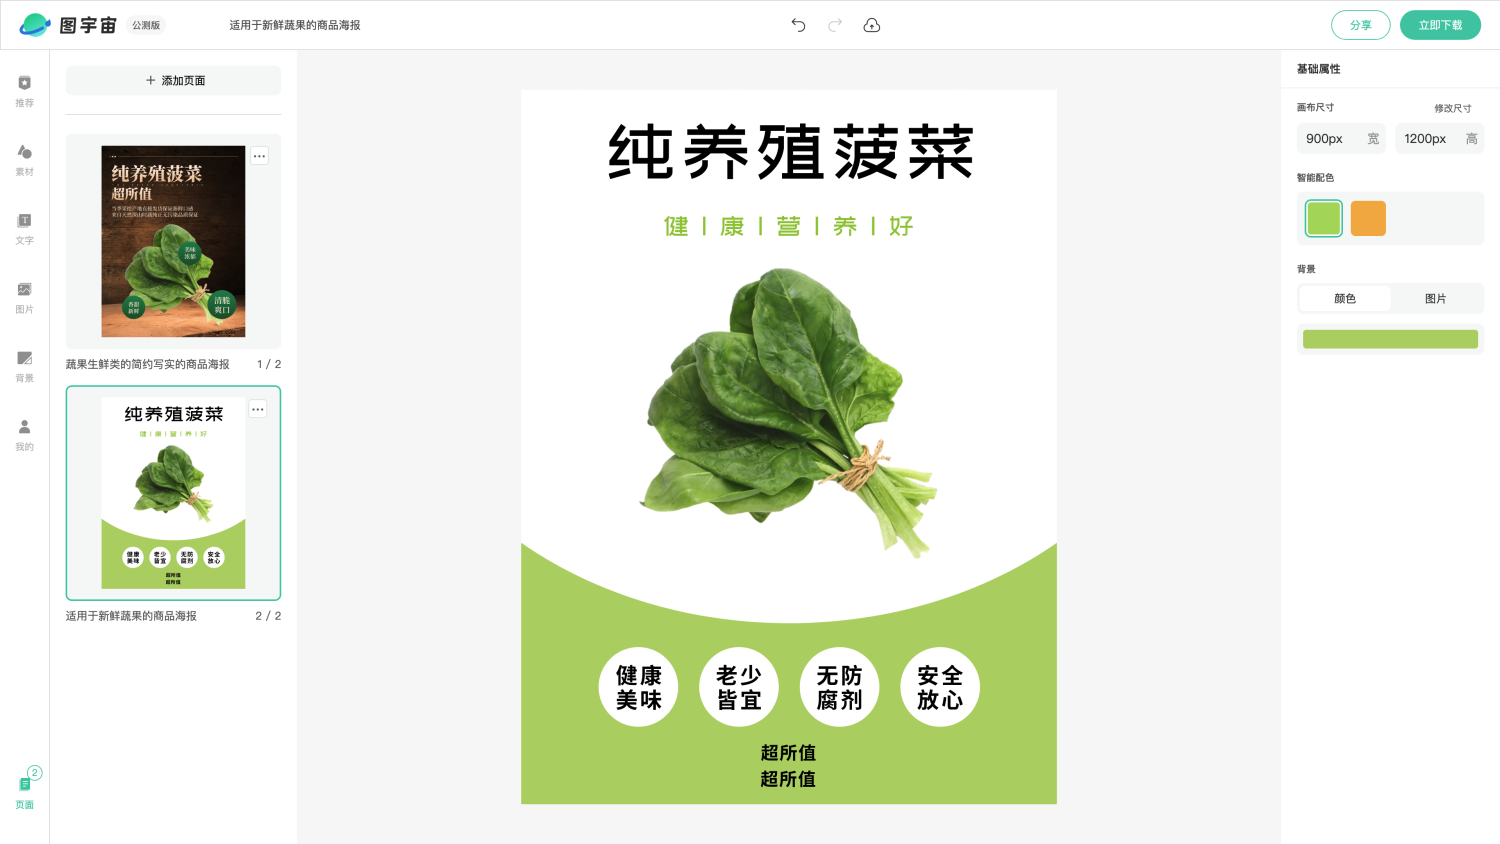 图宇宙-编辑器-蔬果生鲜类的简约写实的商品海报